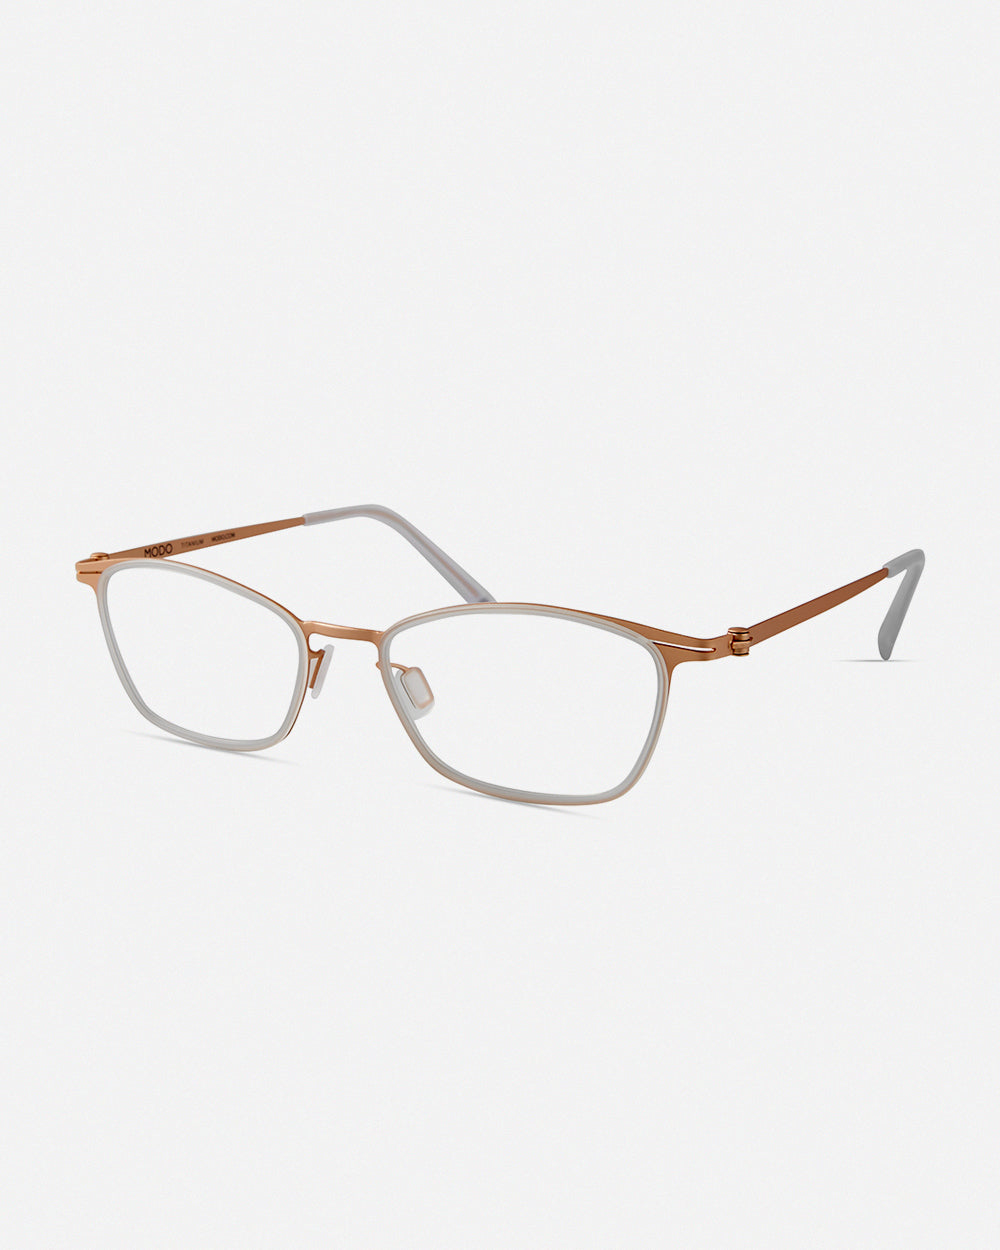 4415 – MODO Eyewear